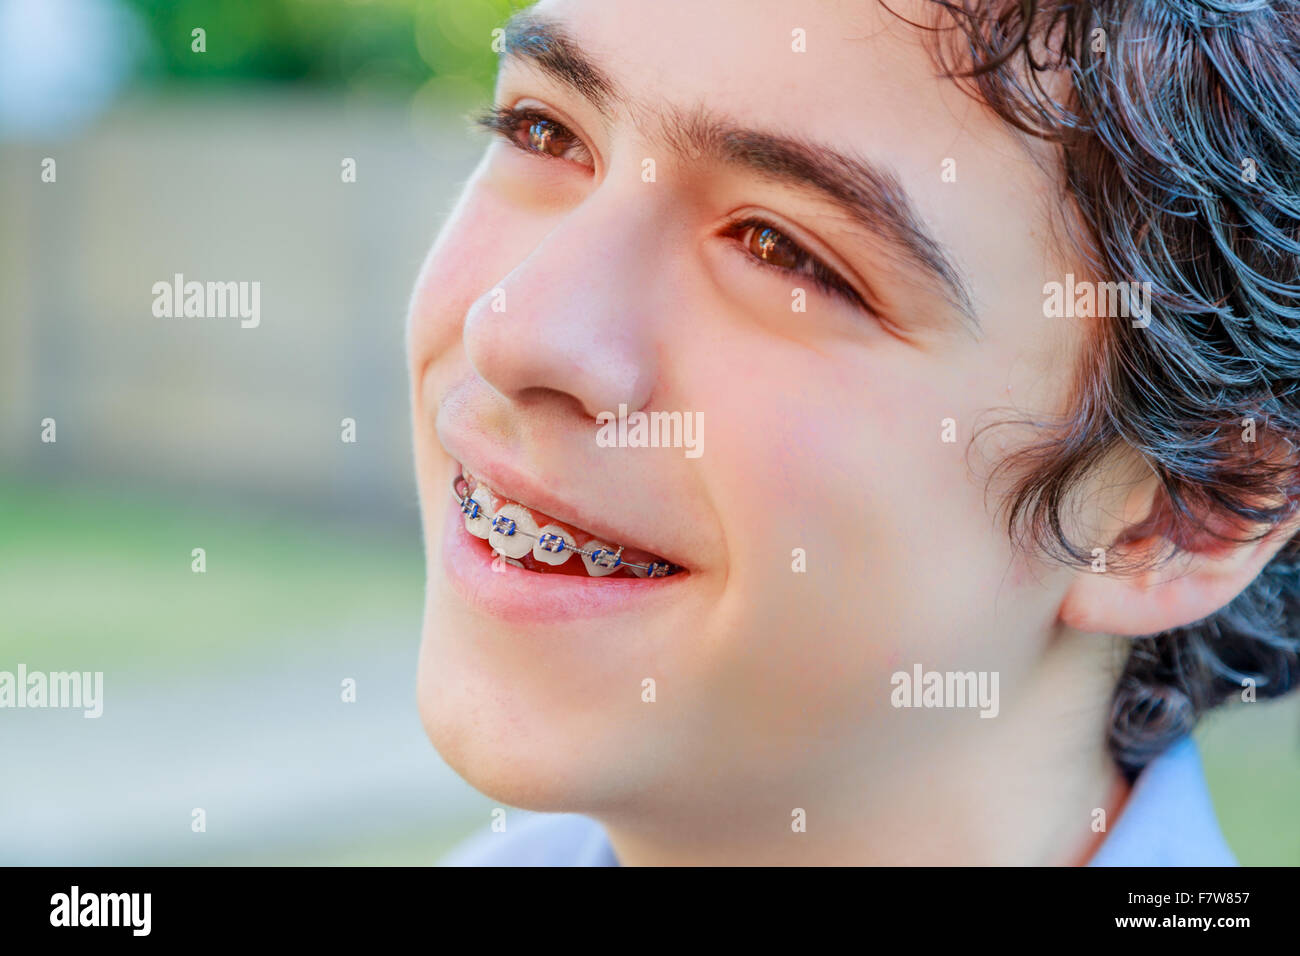 Close-up of Caucasian boy smiling et montrant un appareil orthodontique Banque D'Images